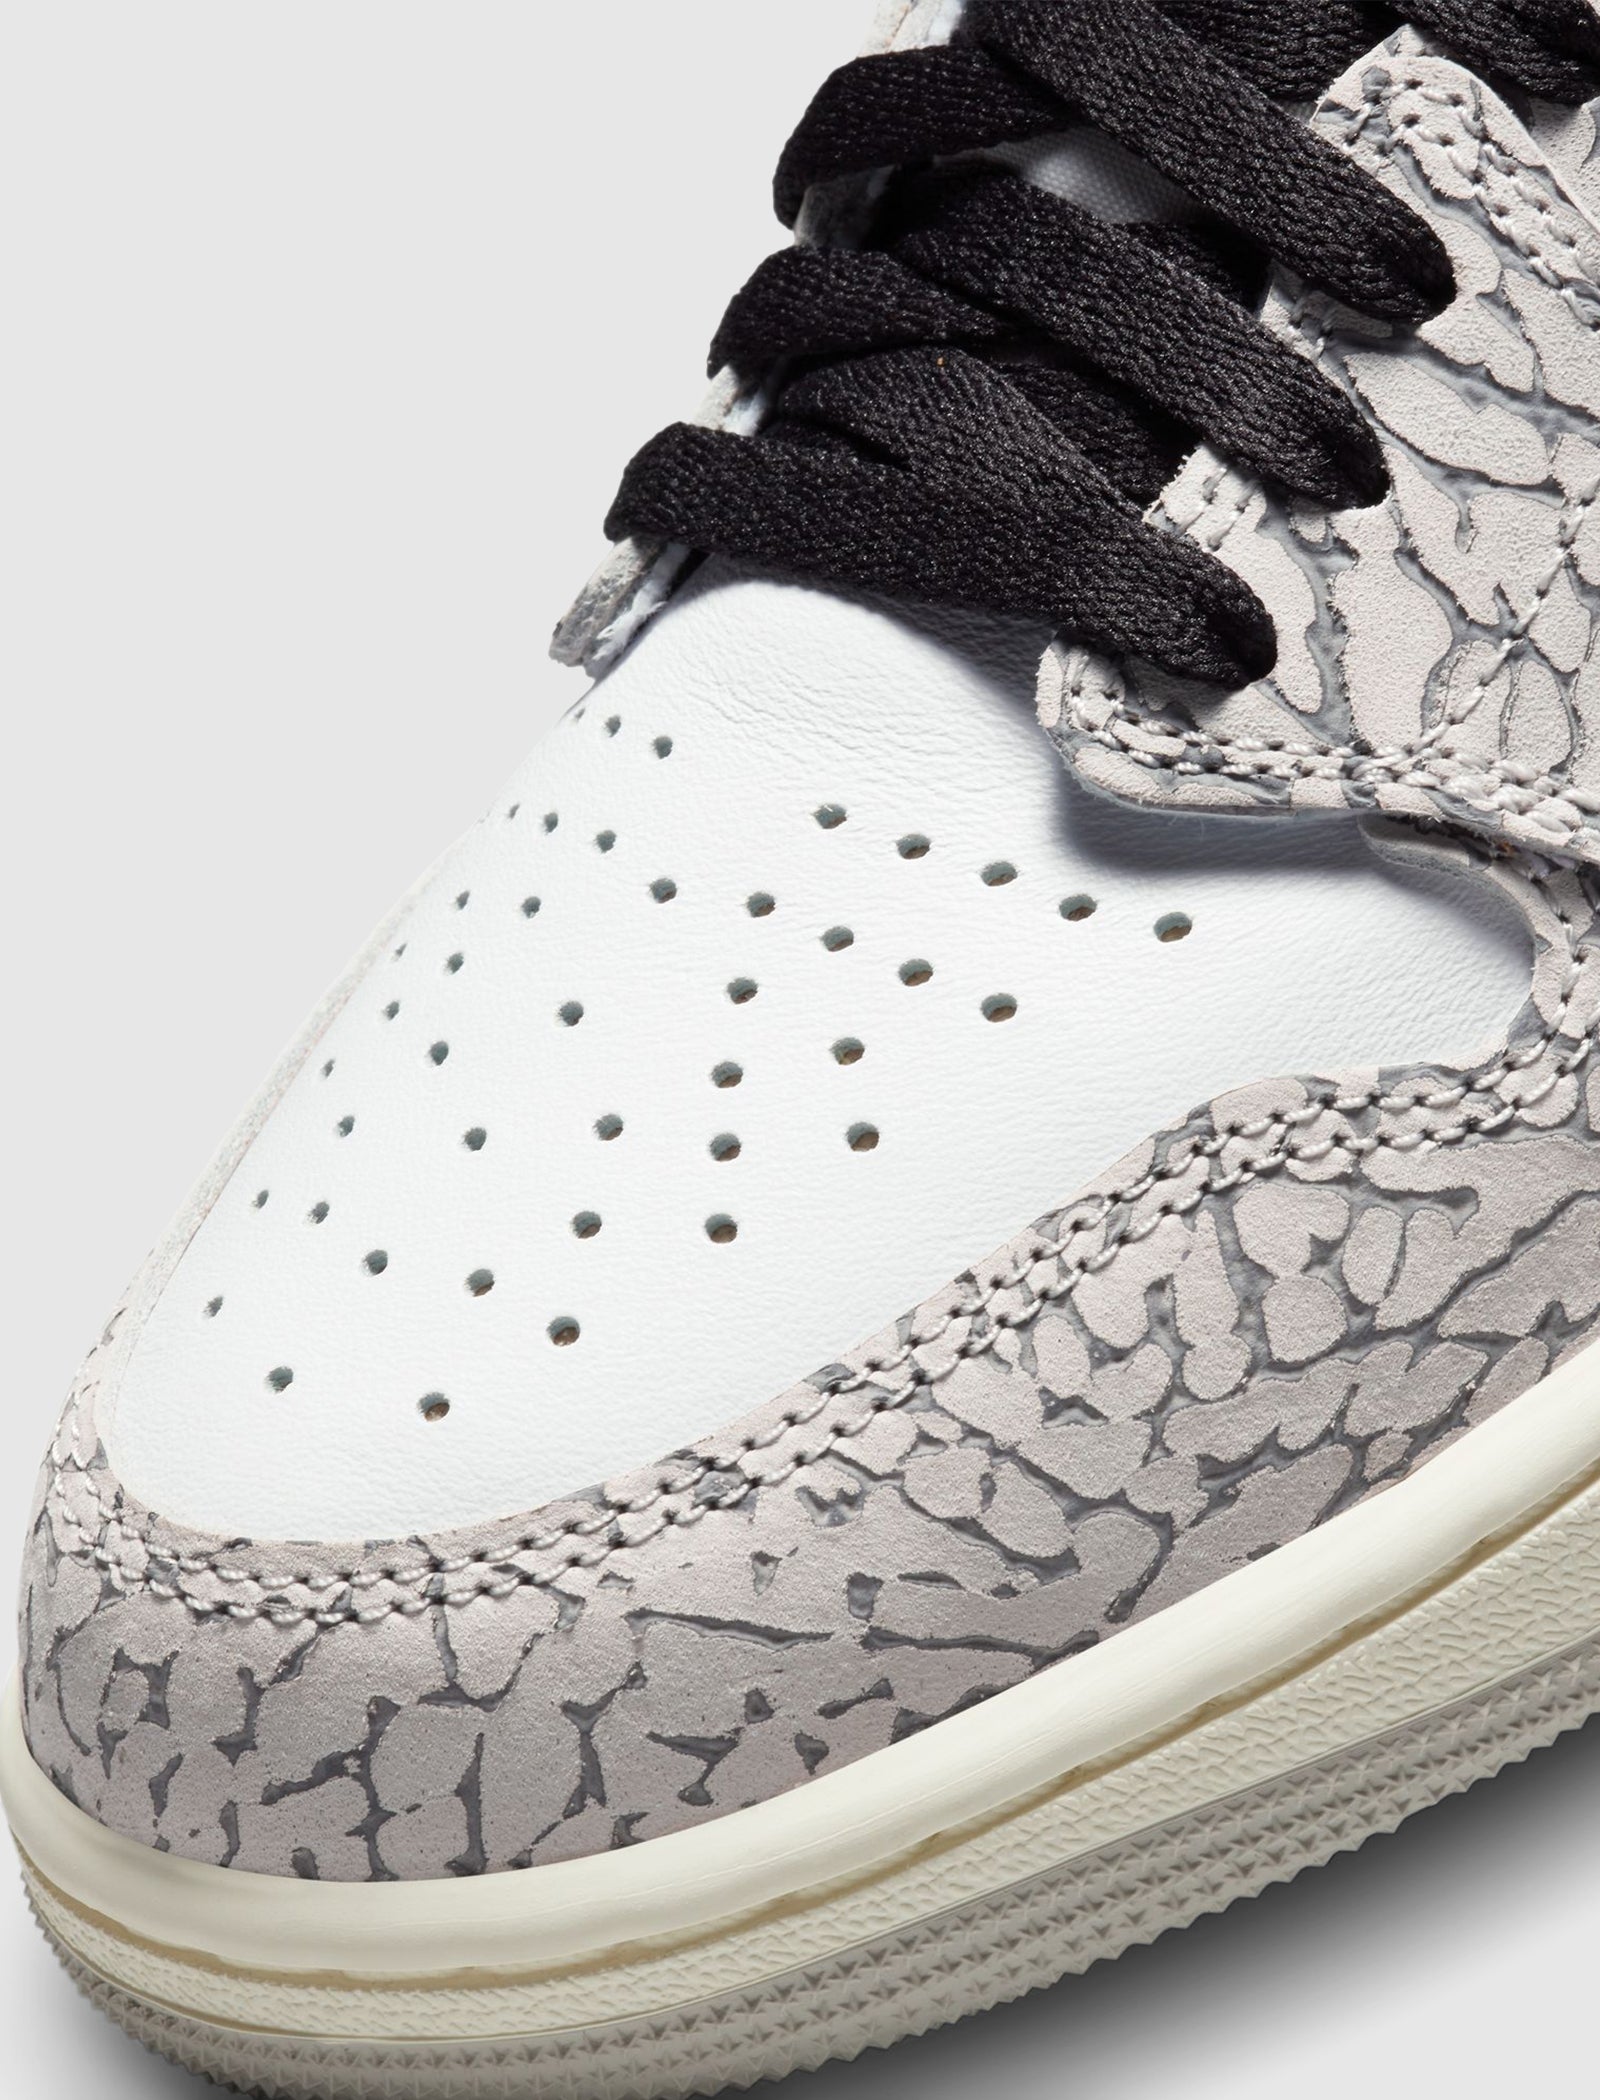 Where to Buy the Air Jordan 1 'White Cement' - Sneaker Freaker